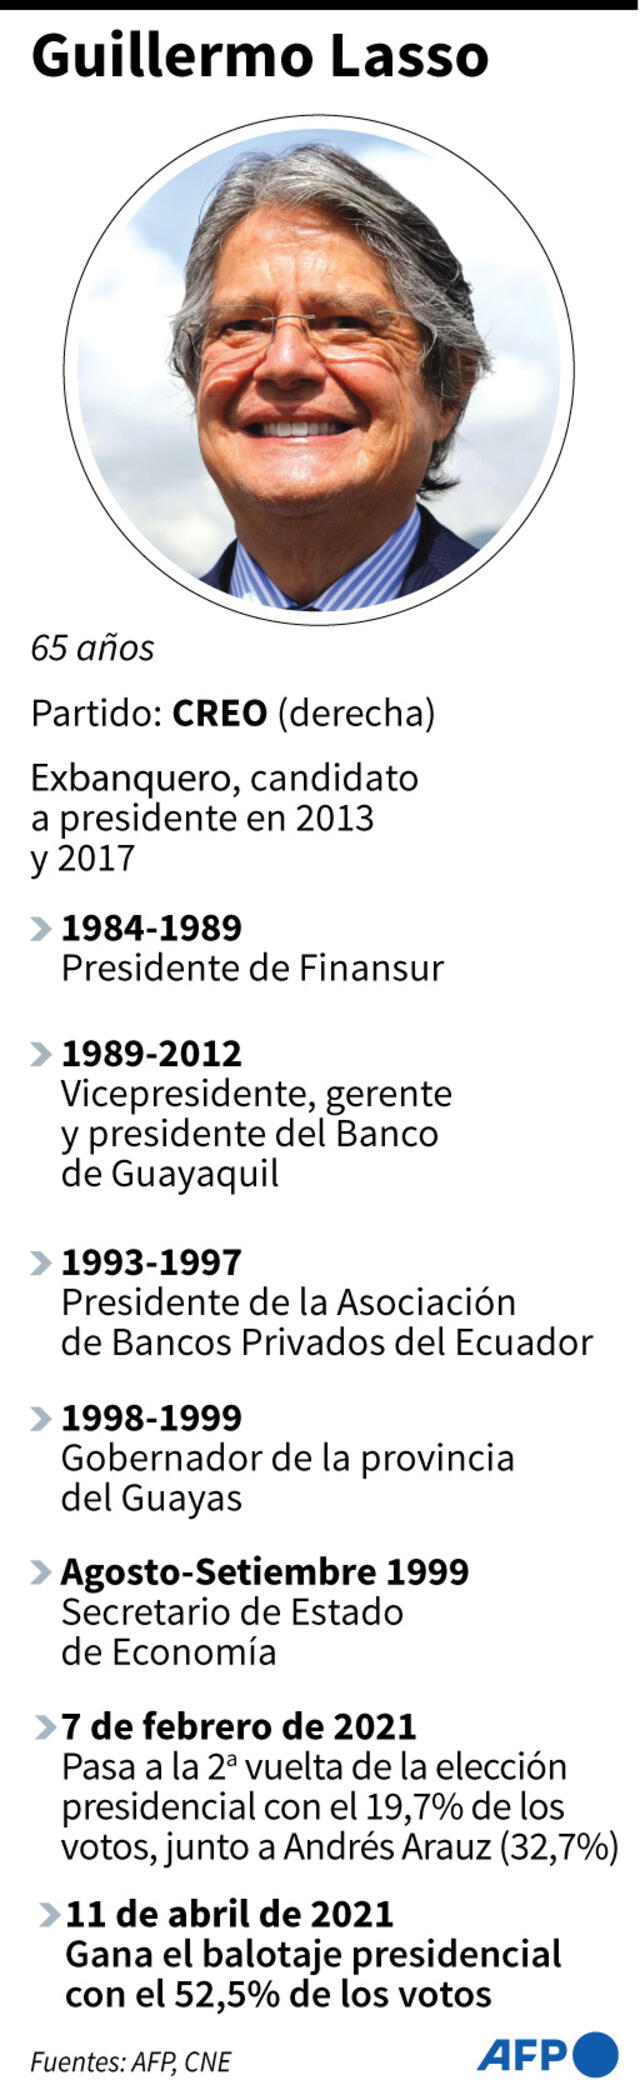 Ficha de Guillermo Lasso, ganador del balotaje presidencial en Ecuador frente al izquierdista Andrés Arauz. Infografía: AFP